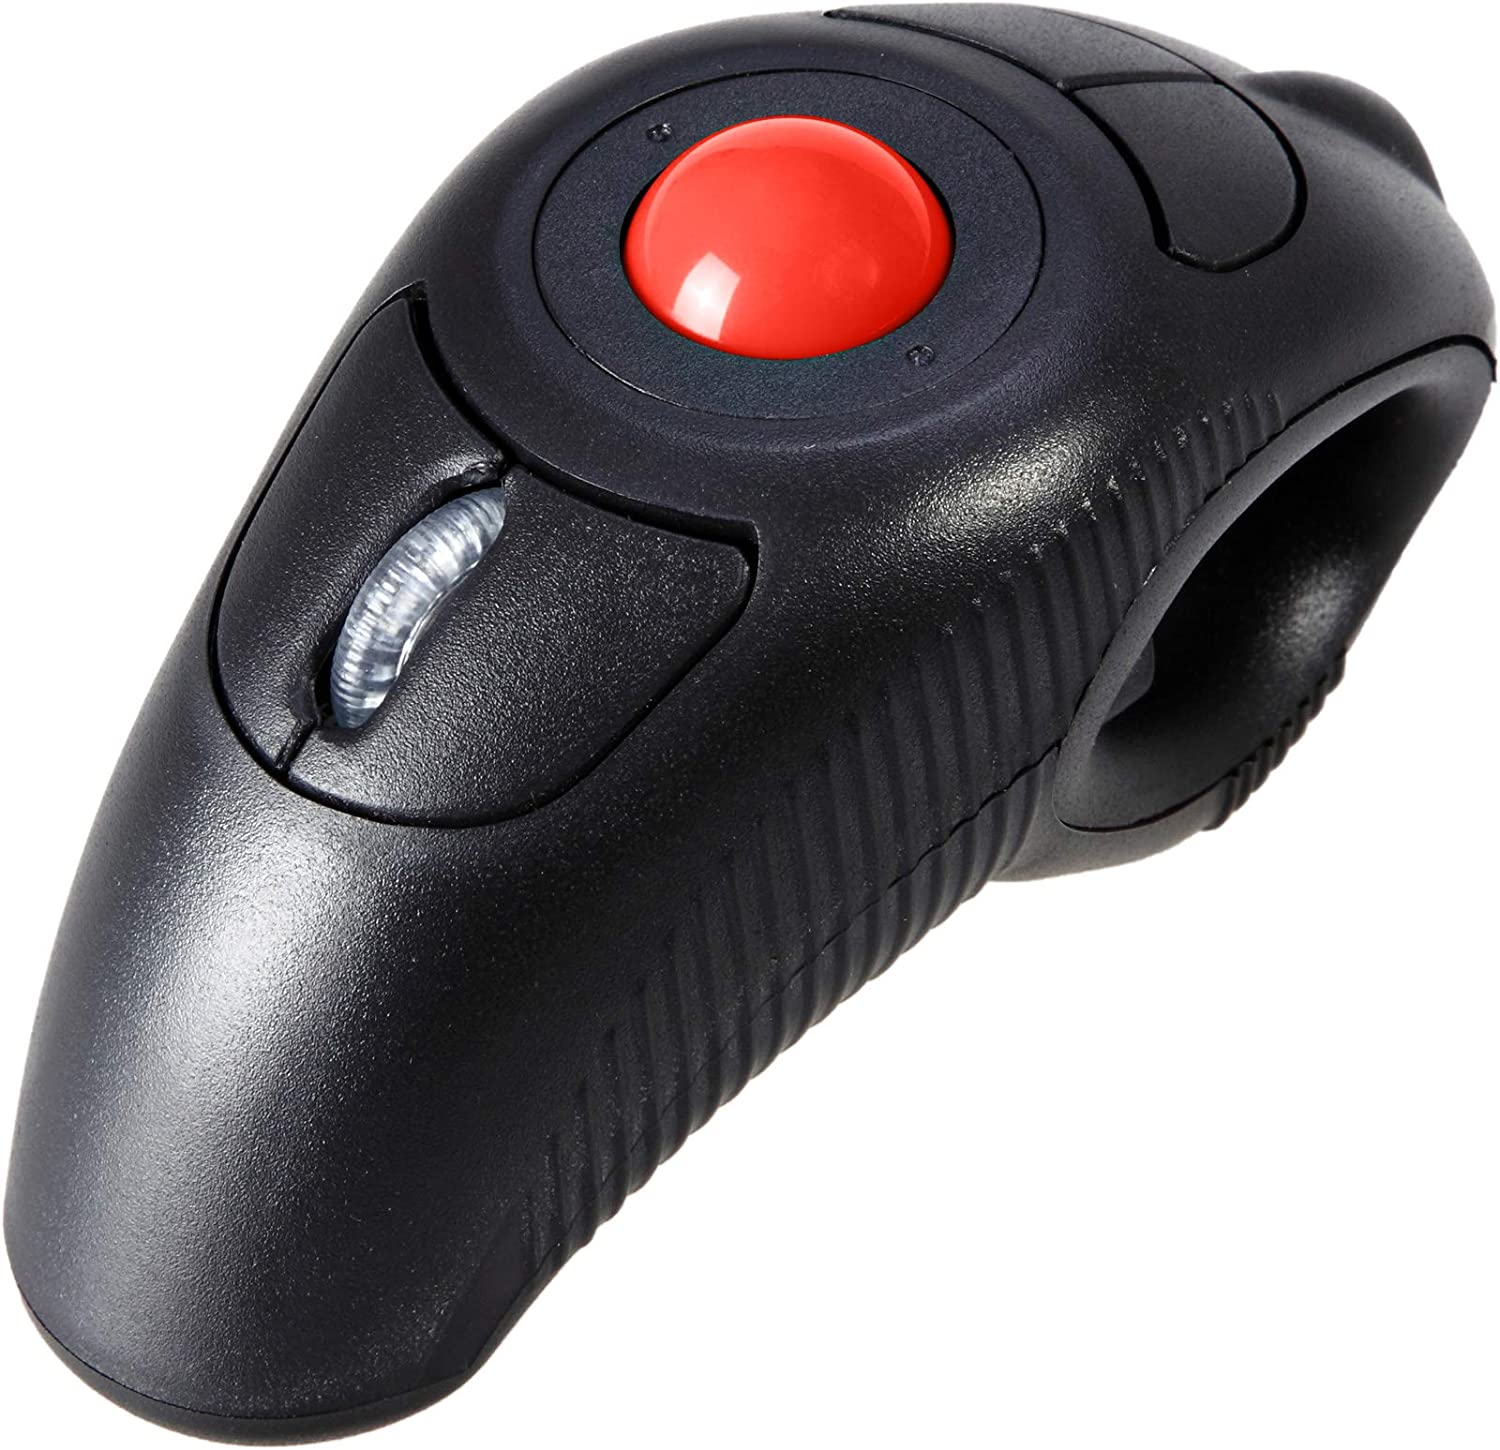 EIGIS 2.4G 인체공학 트랙볼 핑거 핸드헬드 PC 노트북 Mac 좌우 사용자용 USB 무선 마우스(검은색 무선 빨간색 트랙볼)